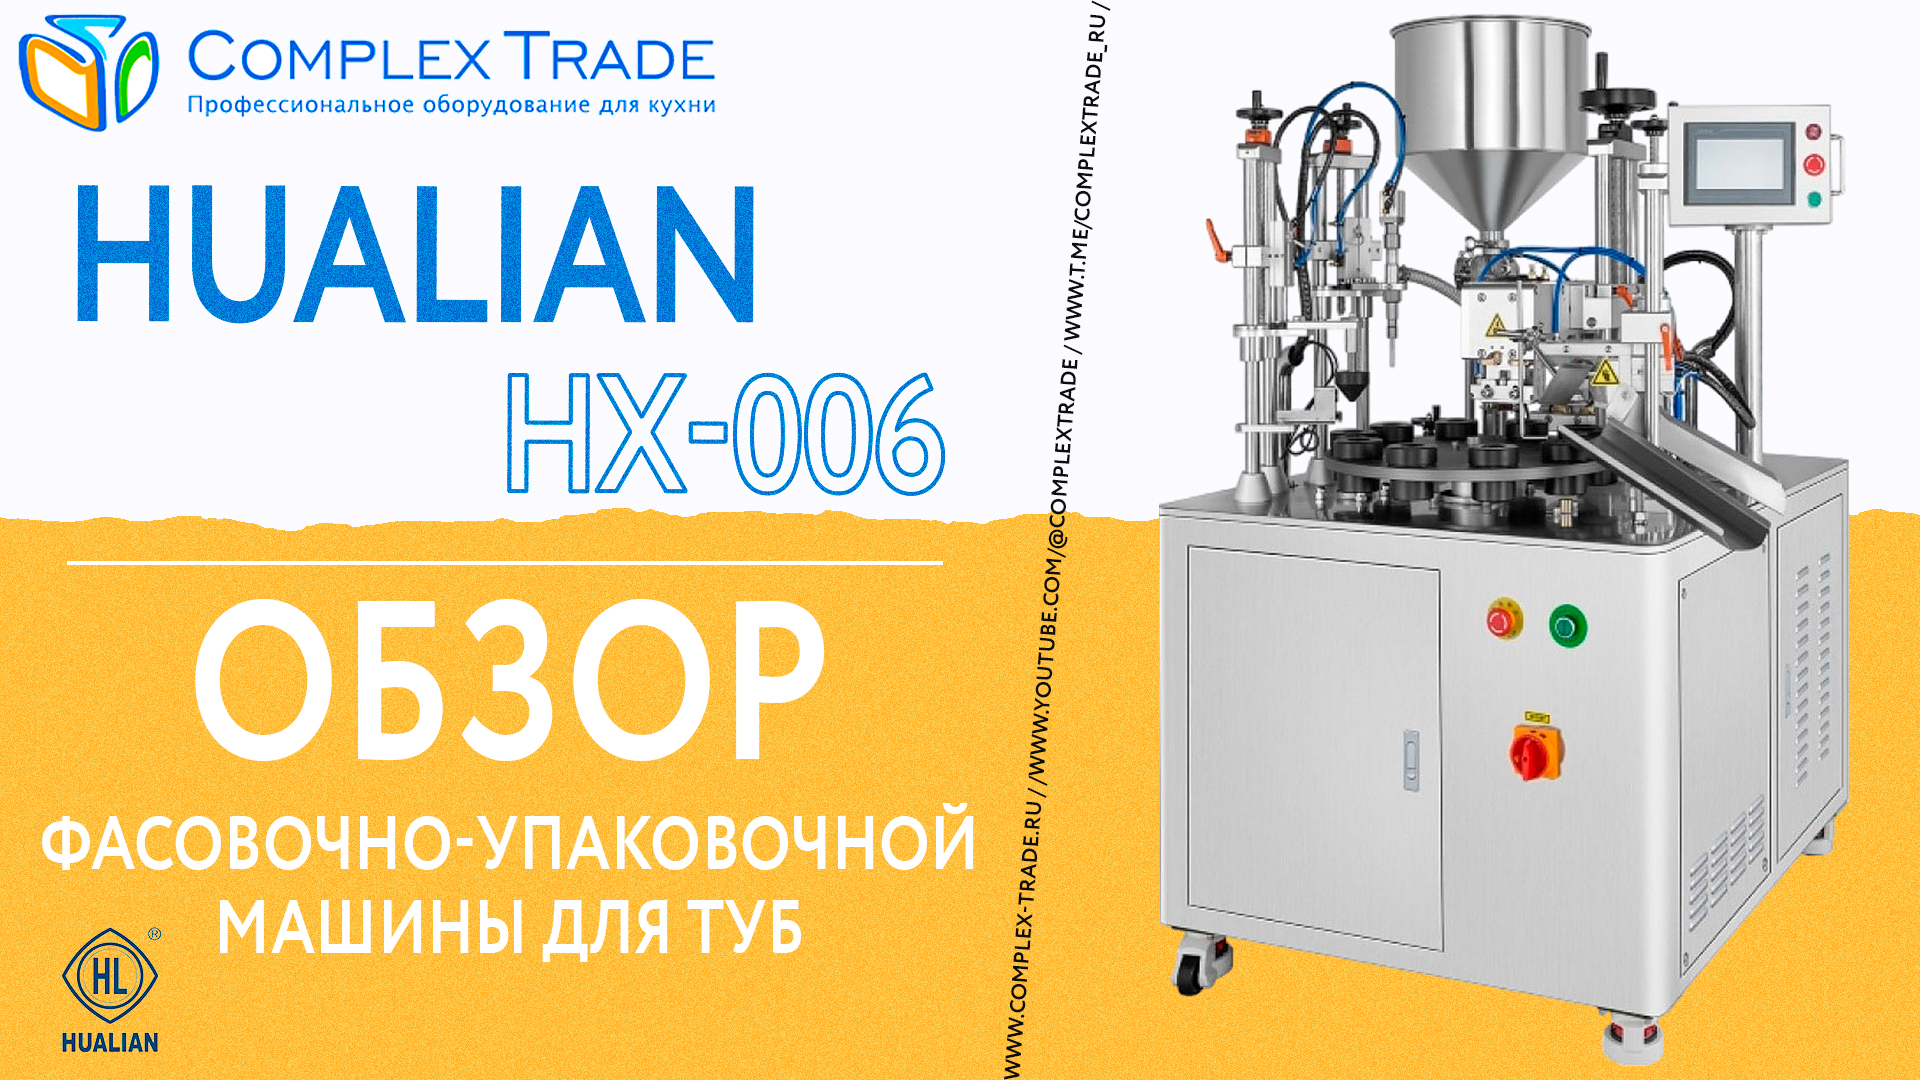 Hualian HX-006 - Обзор фасовочно-упаковочной машины для туб